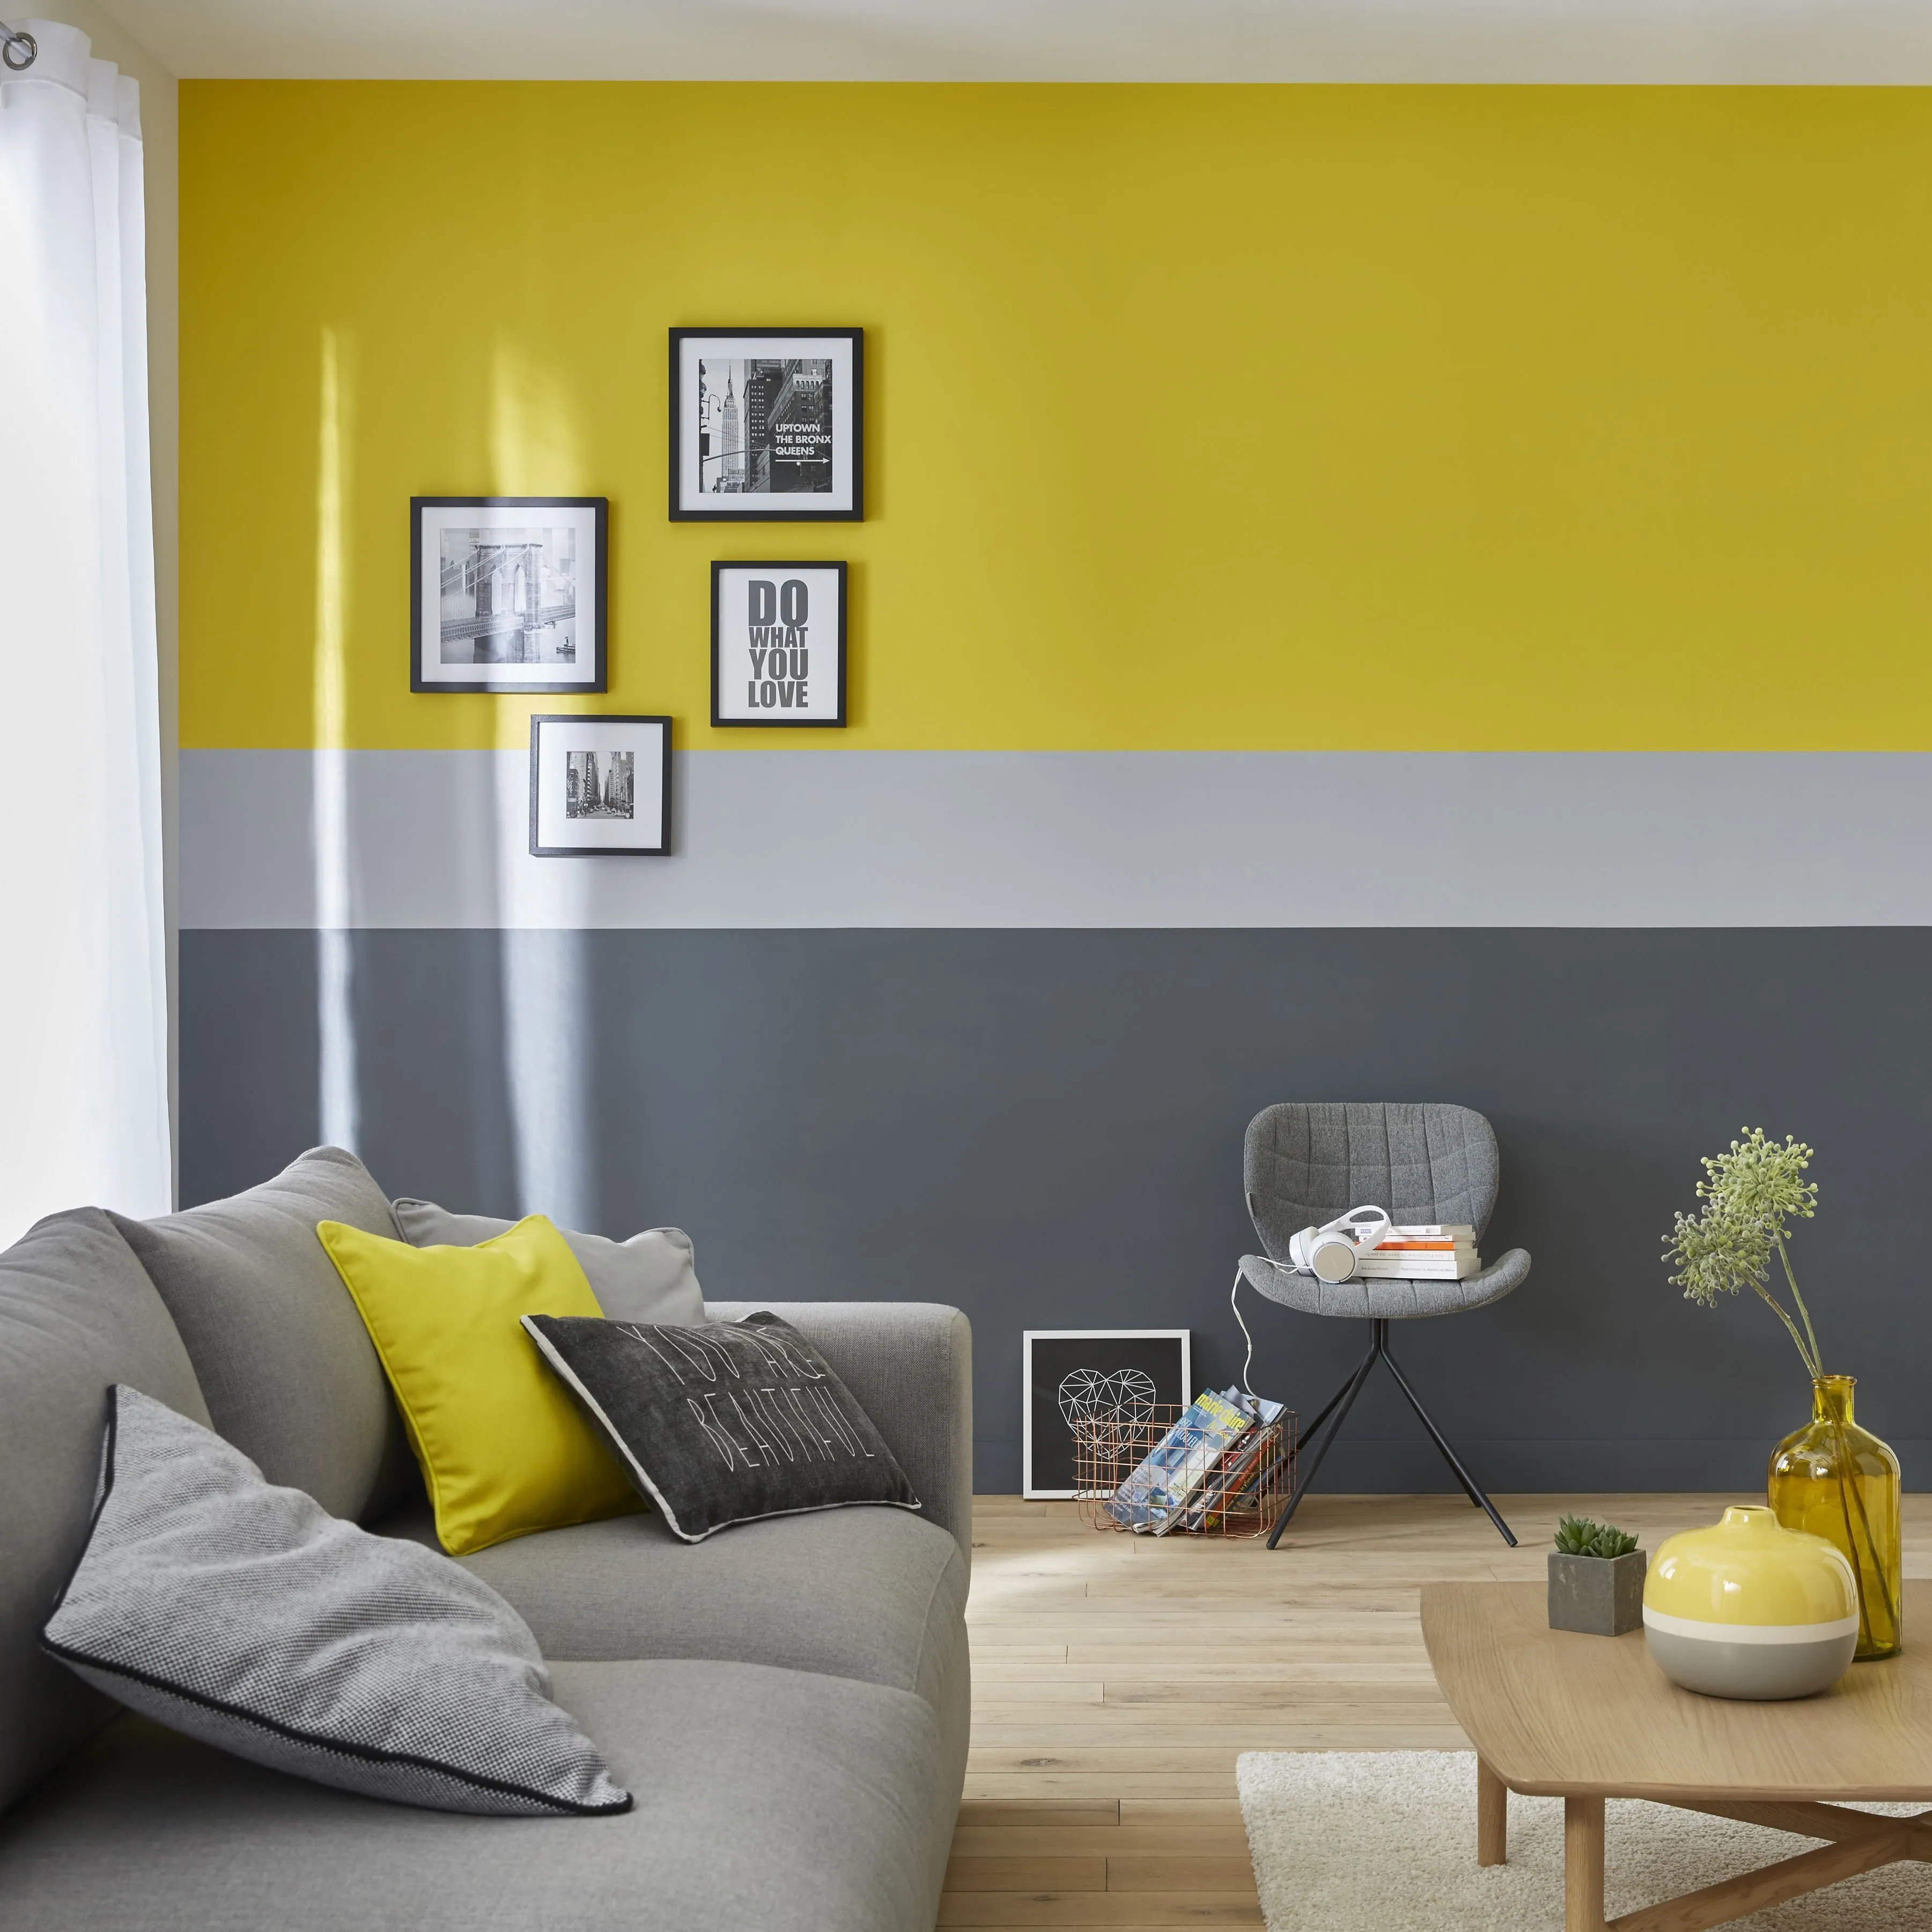 окраска стен в квартире фото примеров